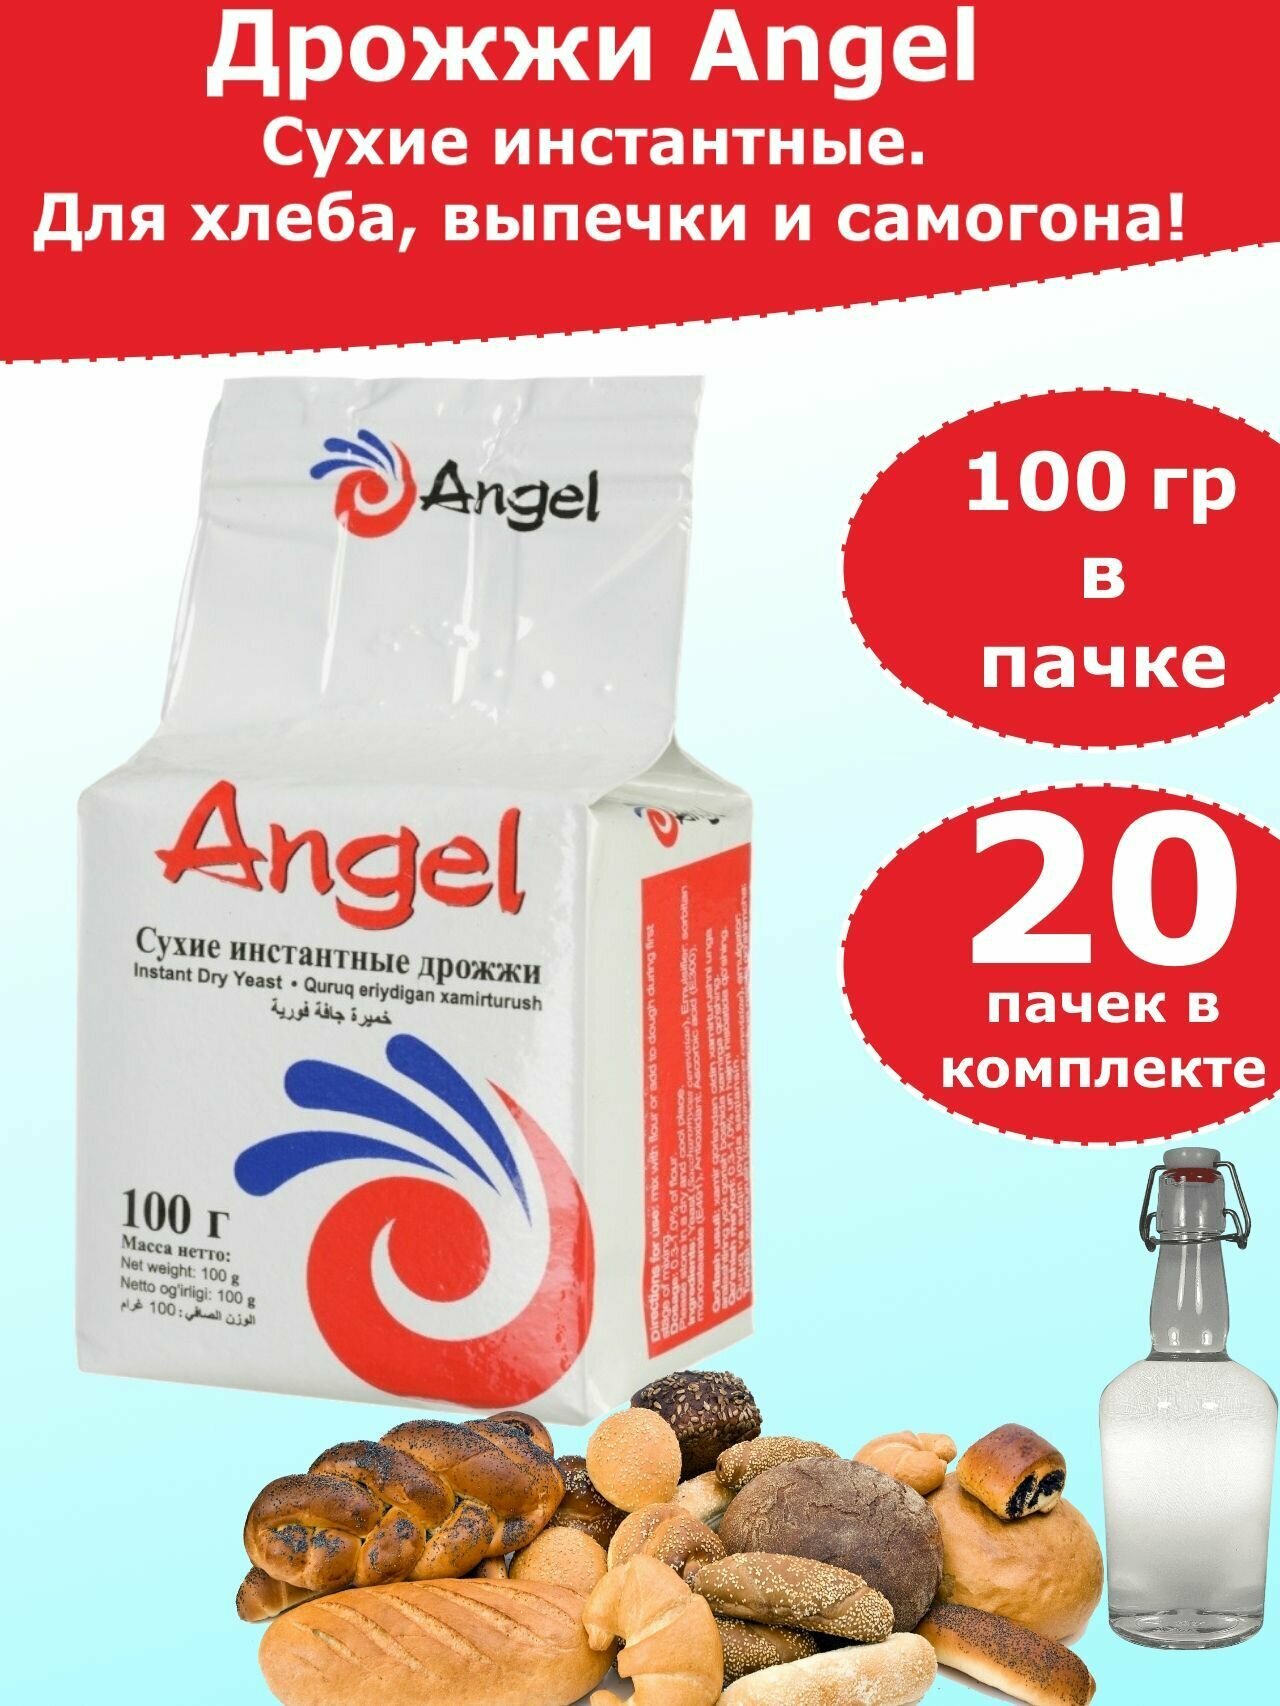 Дрожжи Ангел для хлебопечения и для самогона, 100 гр (комплект из 20 пачек)